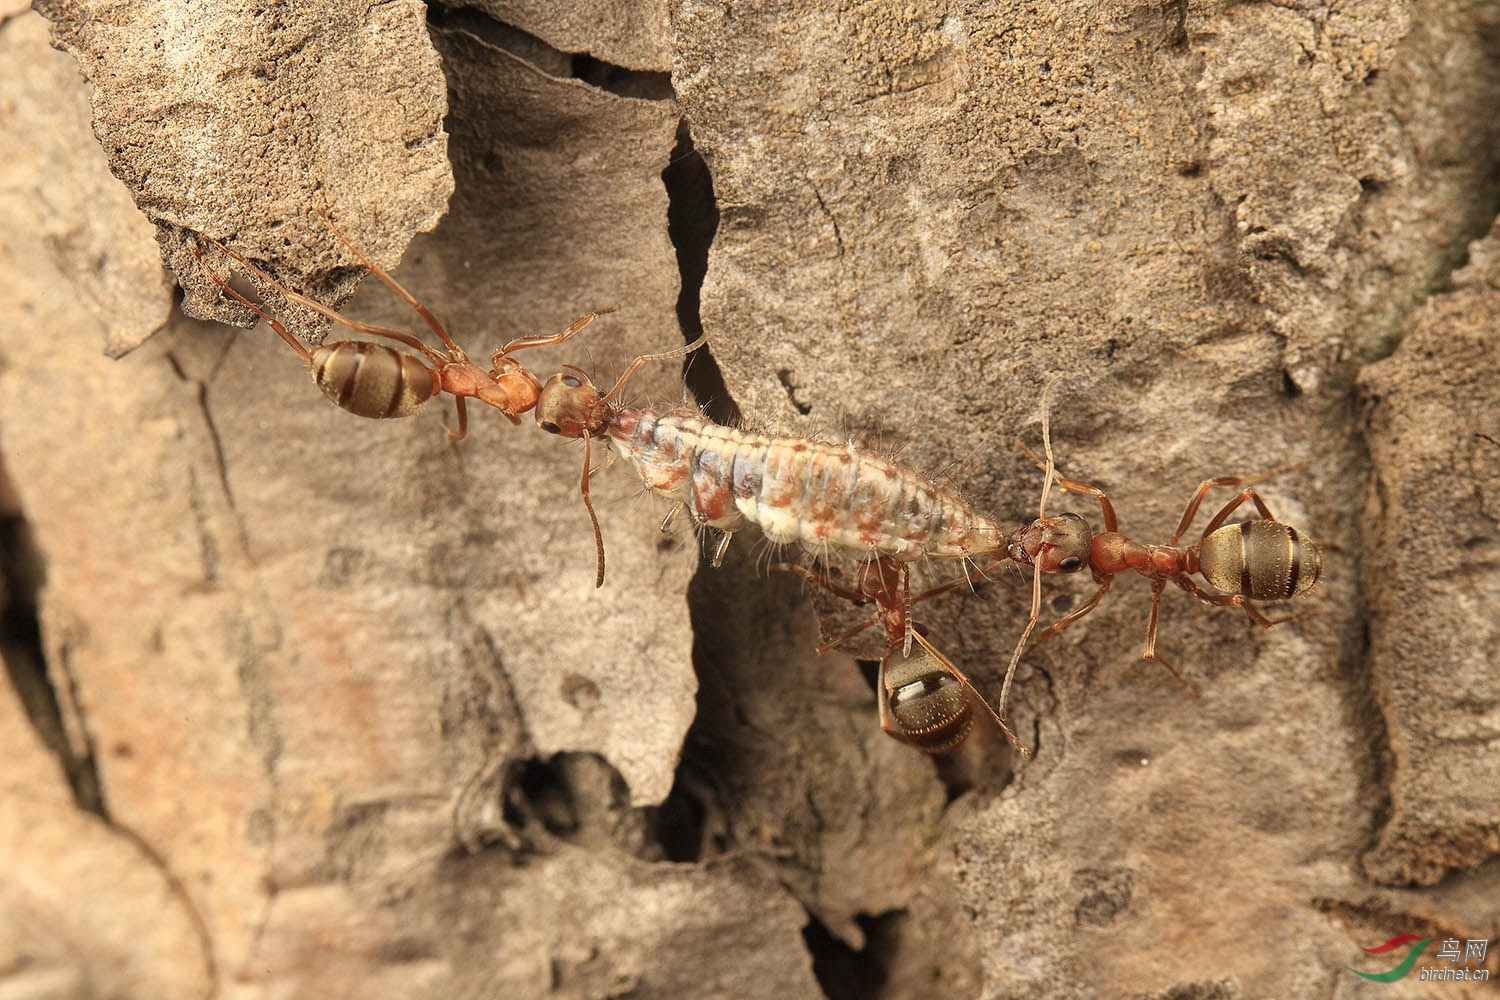 三只蚂蚁从树上搬运一条虫下来